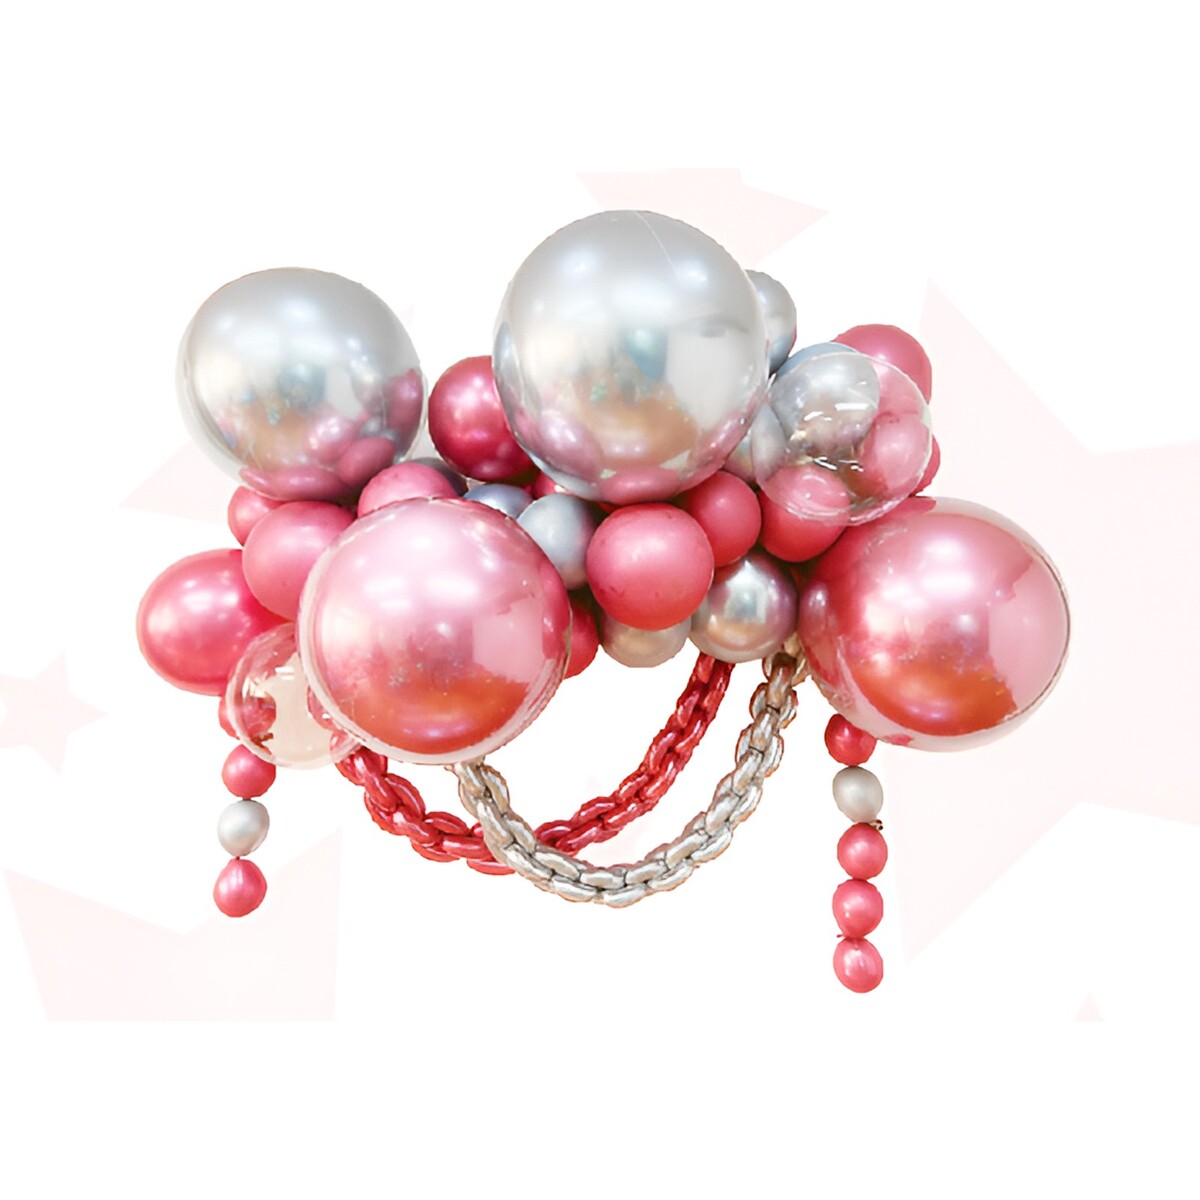 Набор для создания композиций из воздушных шаров, набор 52 шт., серебро, розовый набор для создания открытки из фетра